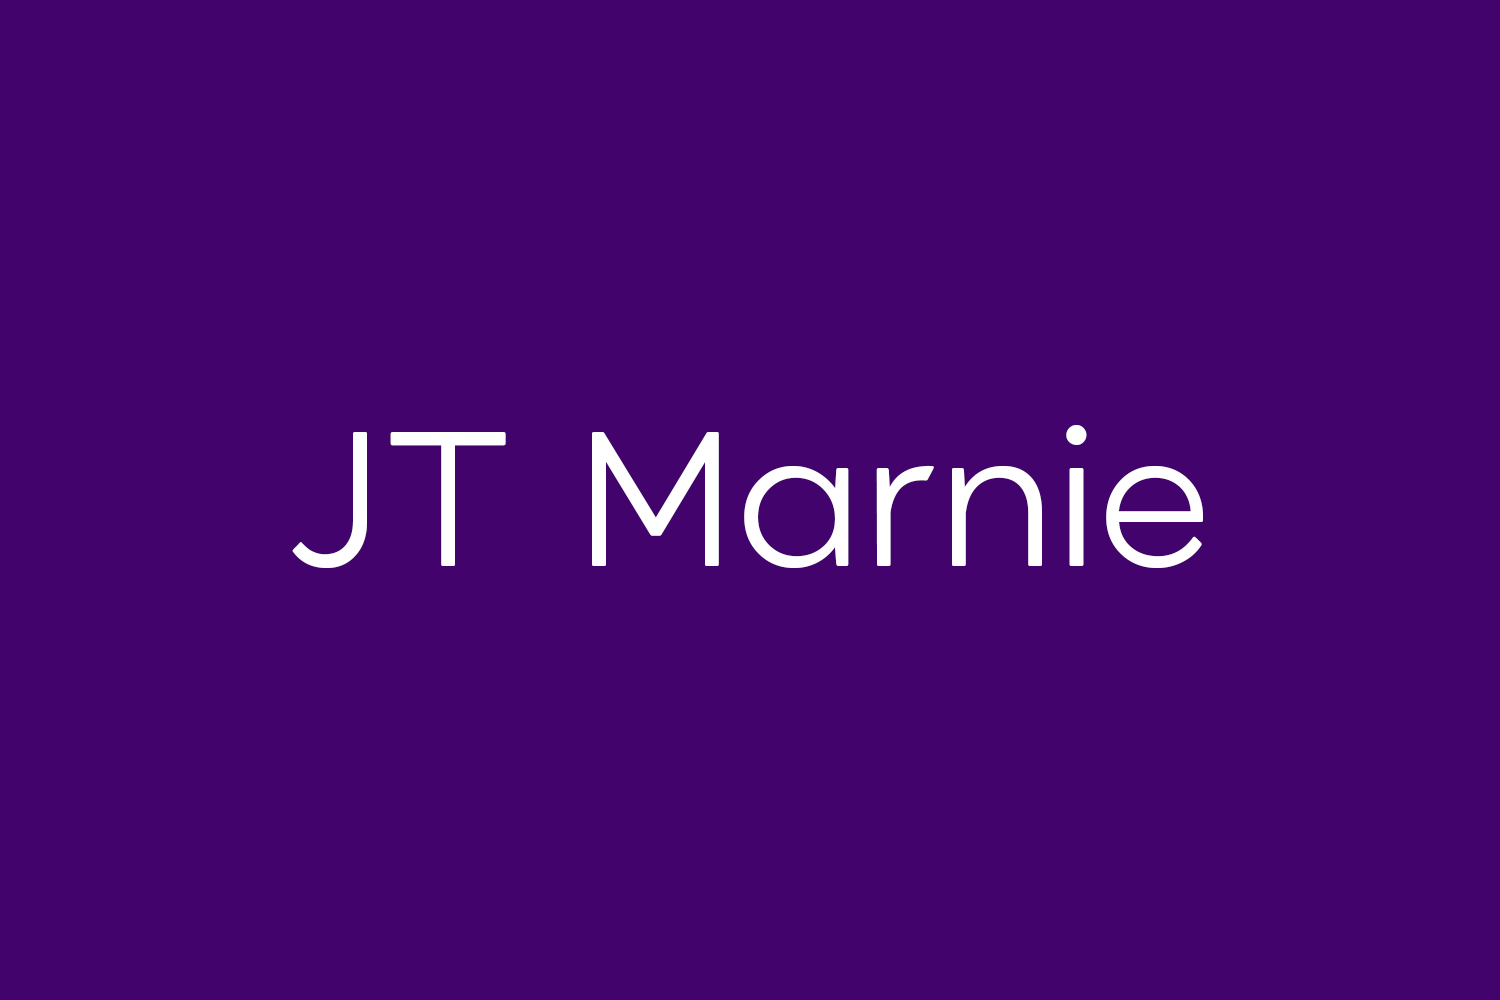 JT Marnie